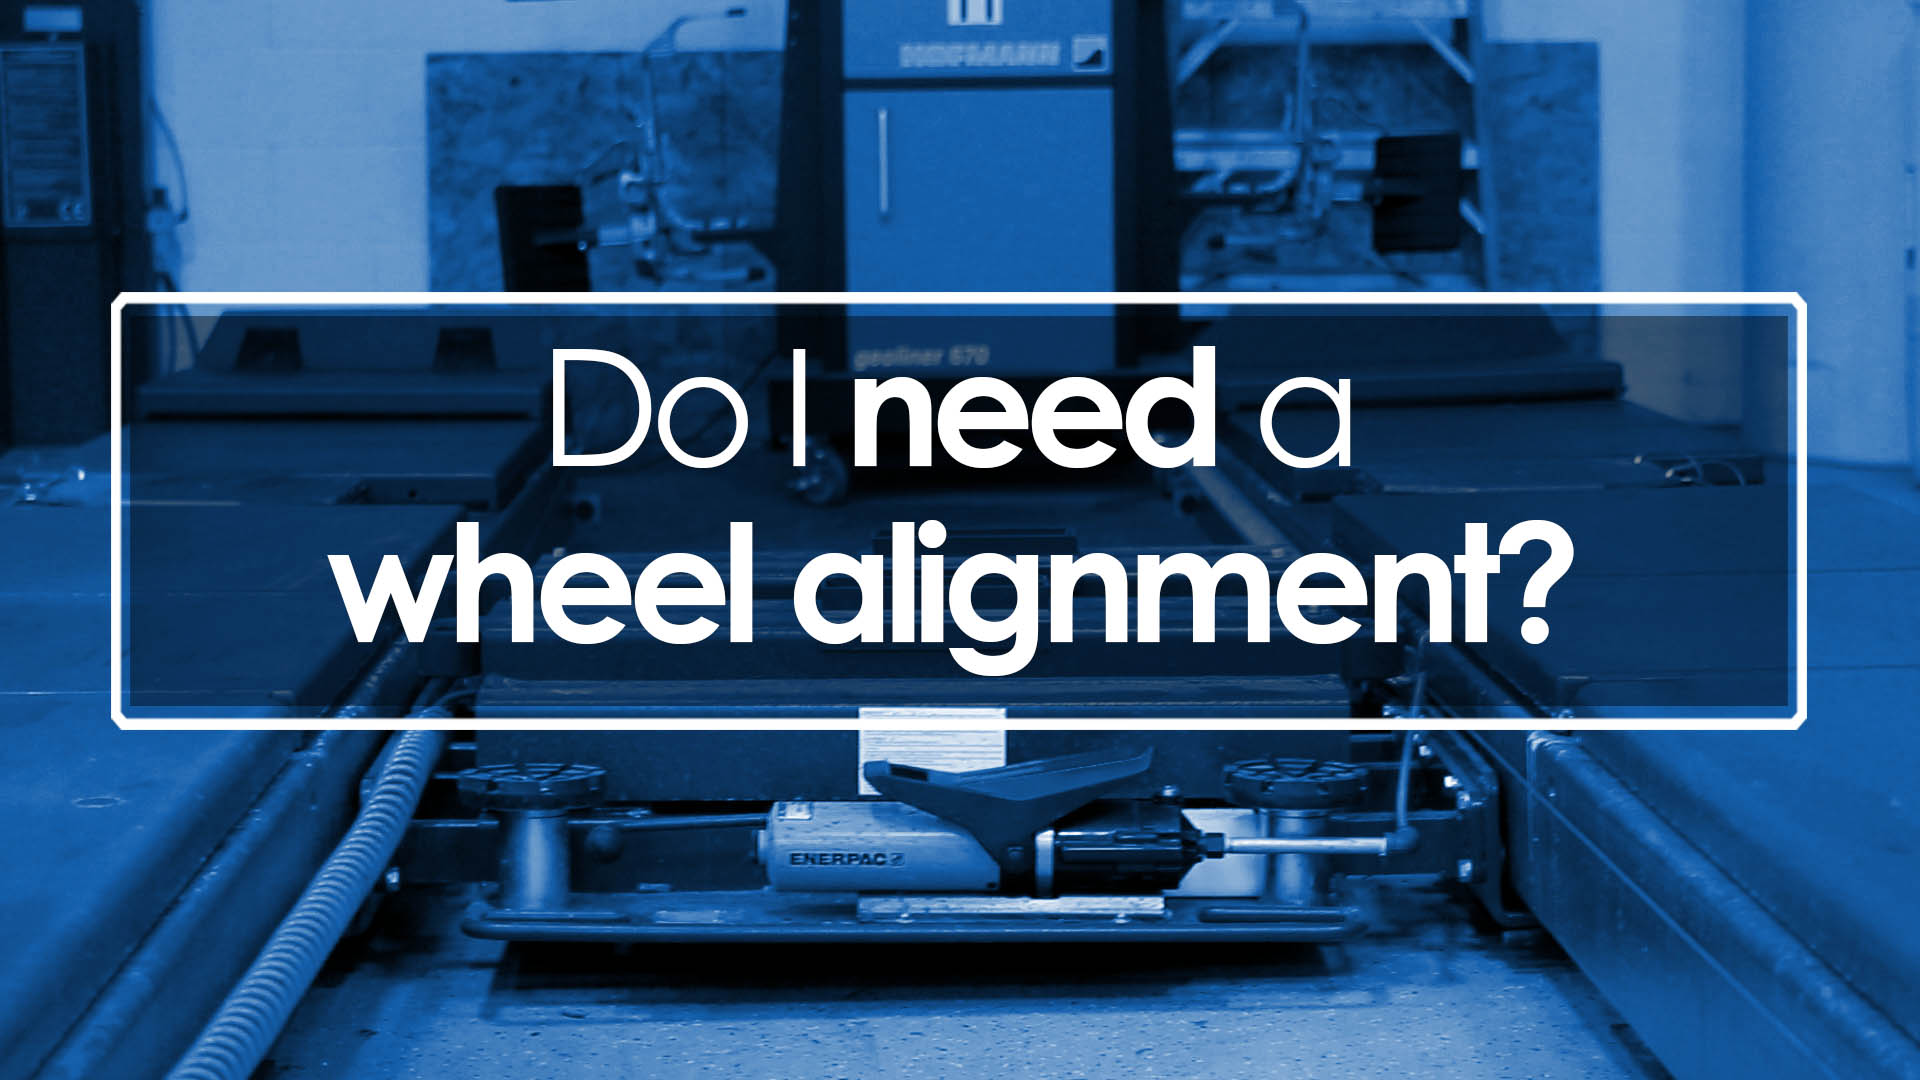 Do I need a wheel alignment